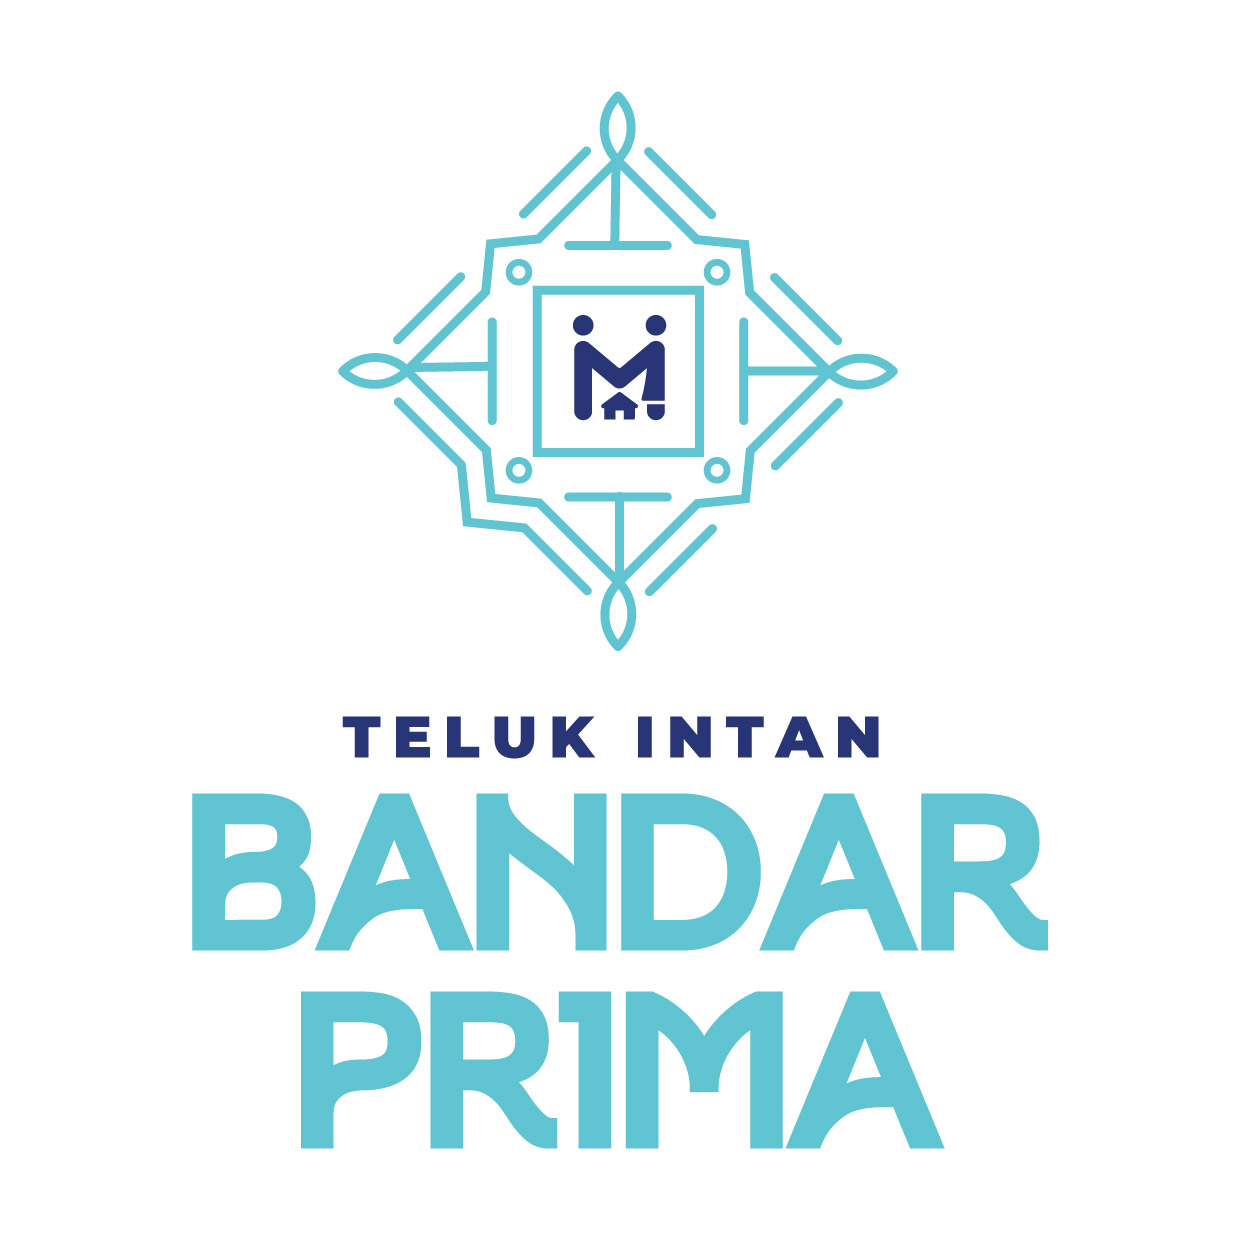 Official logo for Bandar PR1MA Teluk Intan